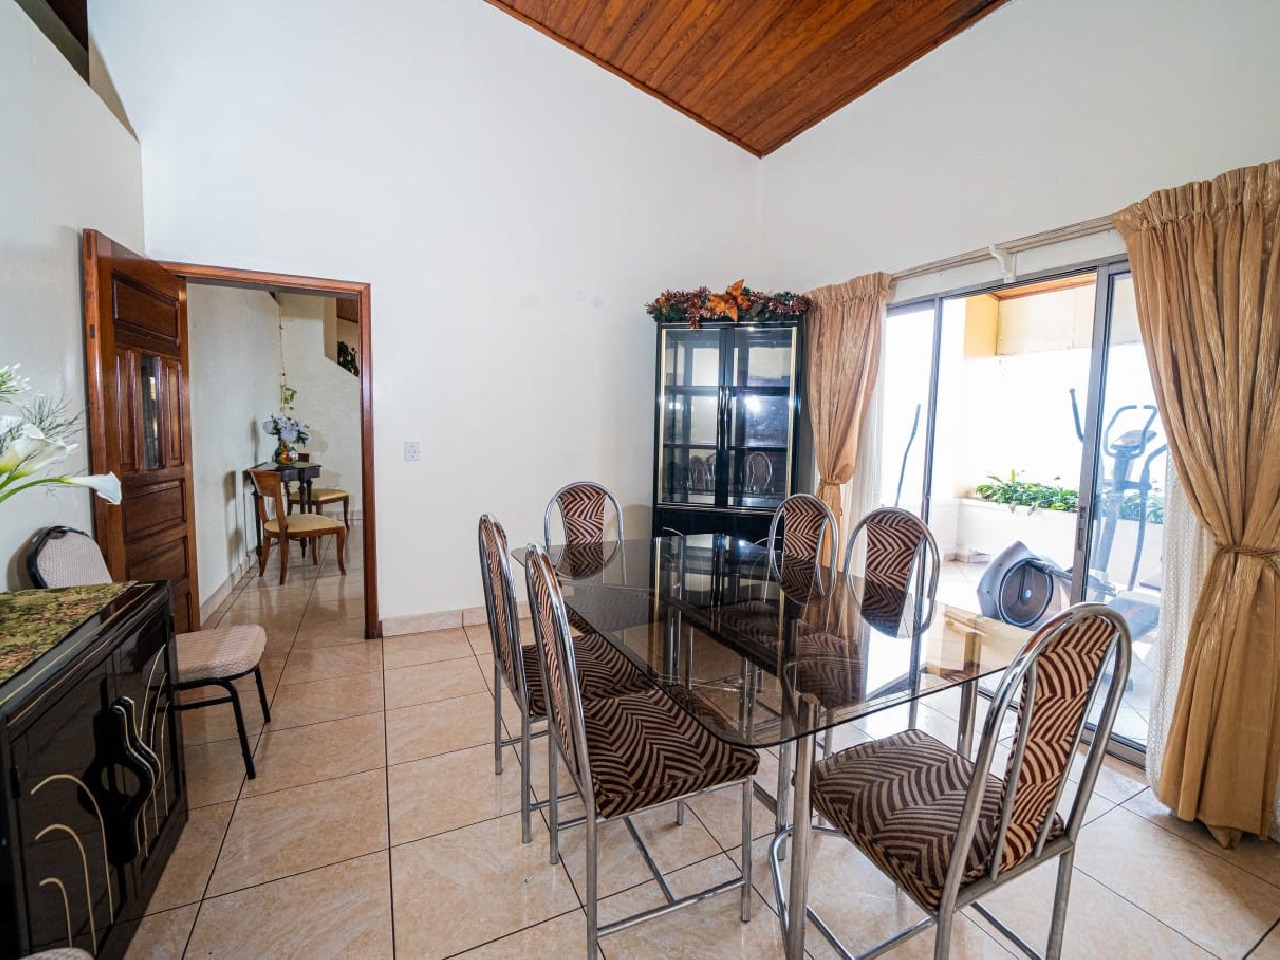 Comedor ideal para tu familia conformada por seis sillas, este espacio esta acompañado de puerta corrediza de cristal y muebles.